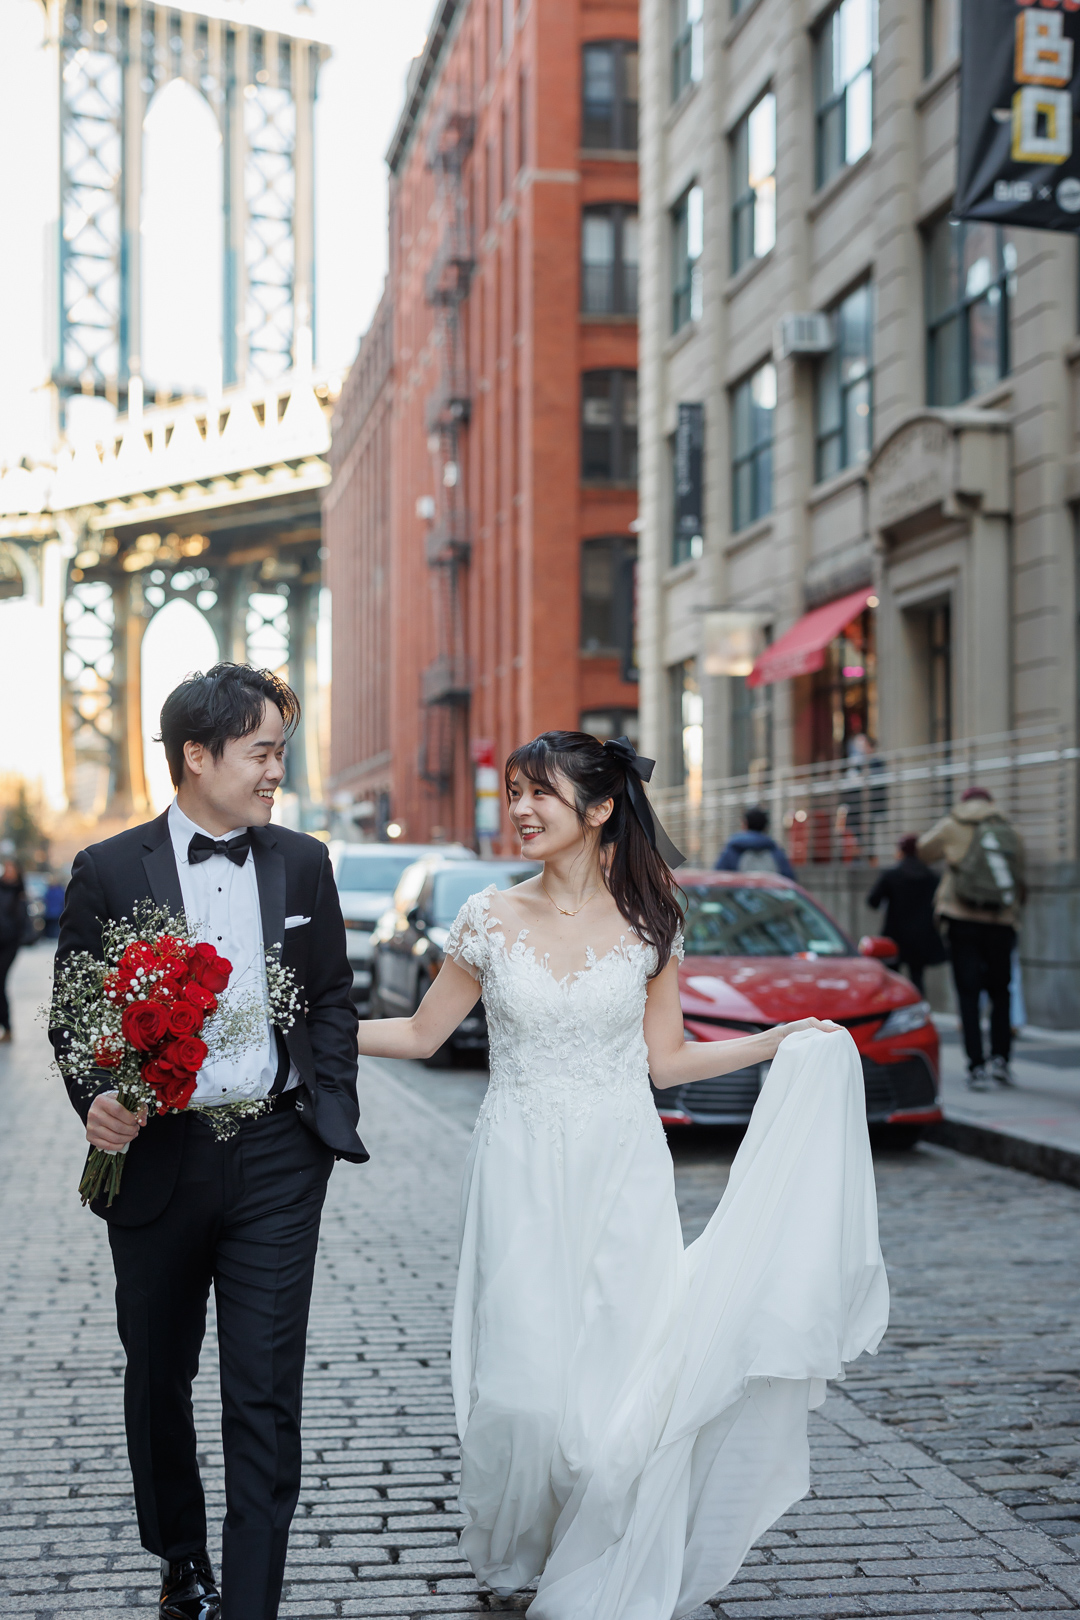 アメリカニューヨークの前撮り/フォトウェディング/ワシントンストリートでほほ笑みあうカップル
